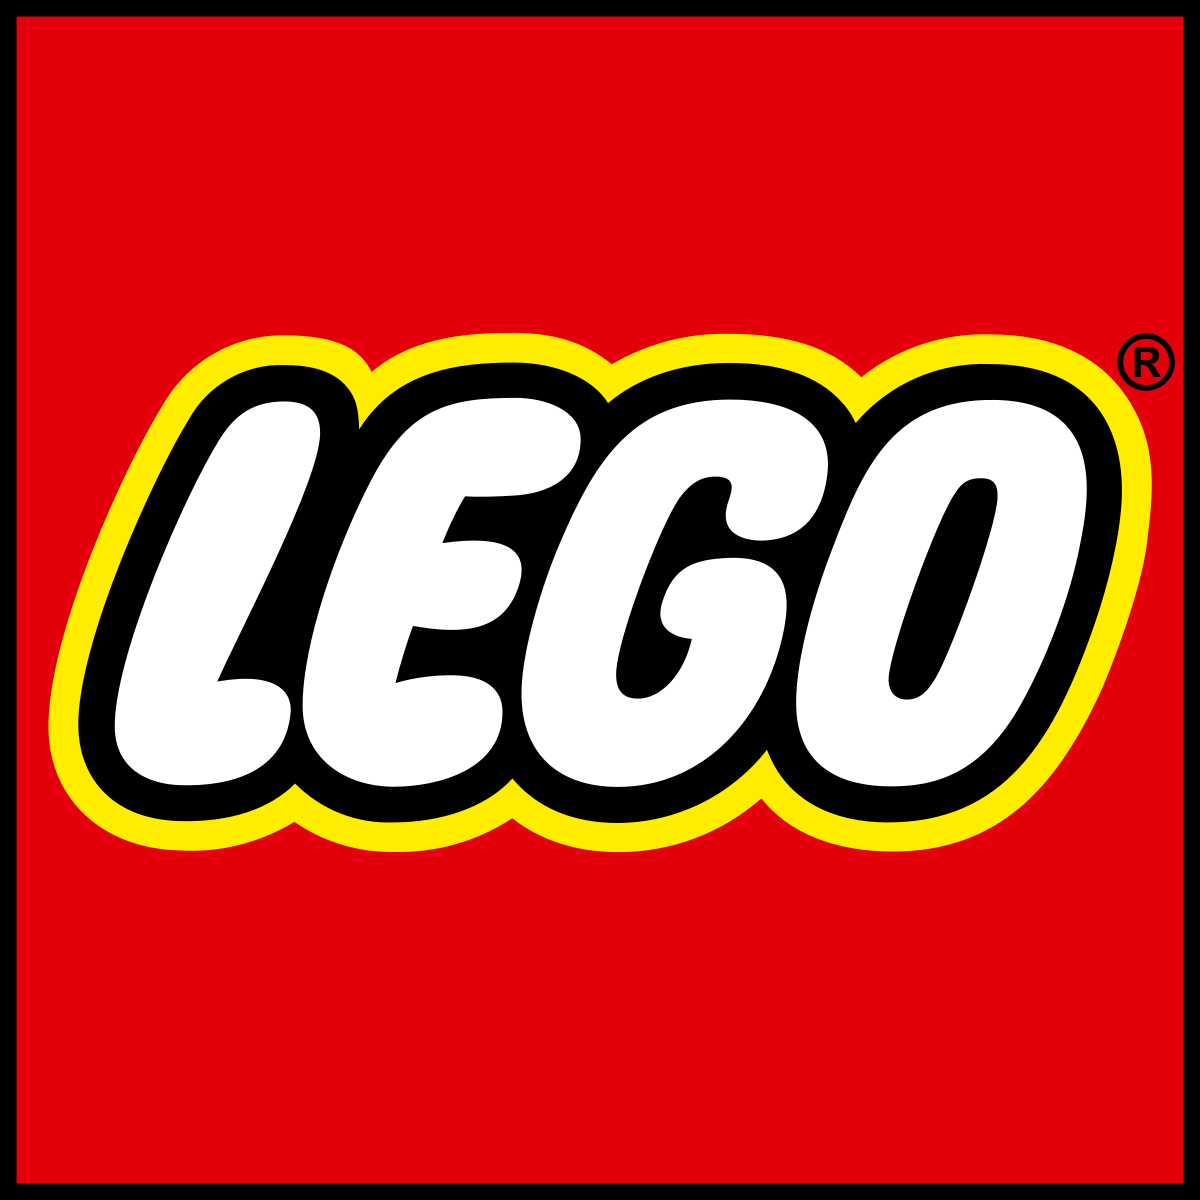 Lego: история создания и успеха компании Лего